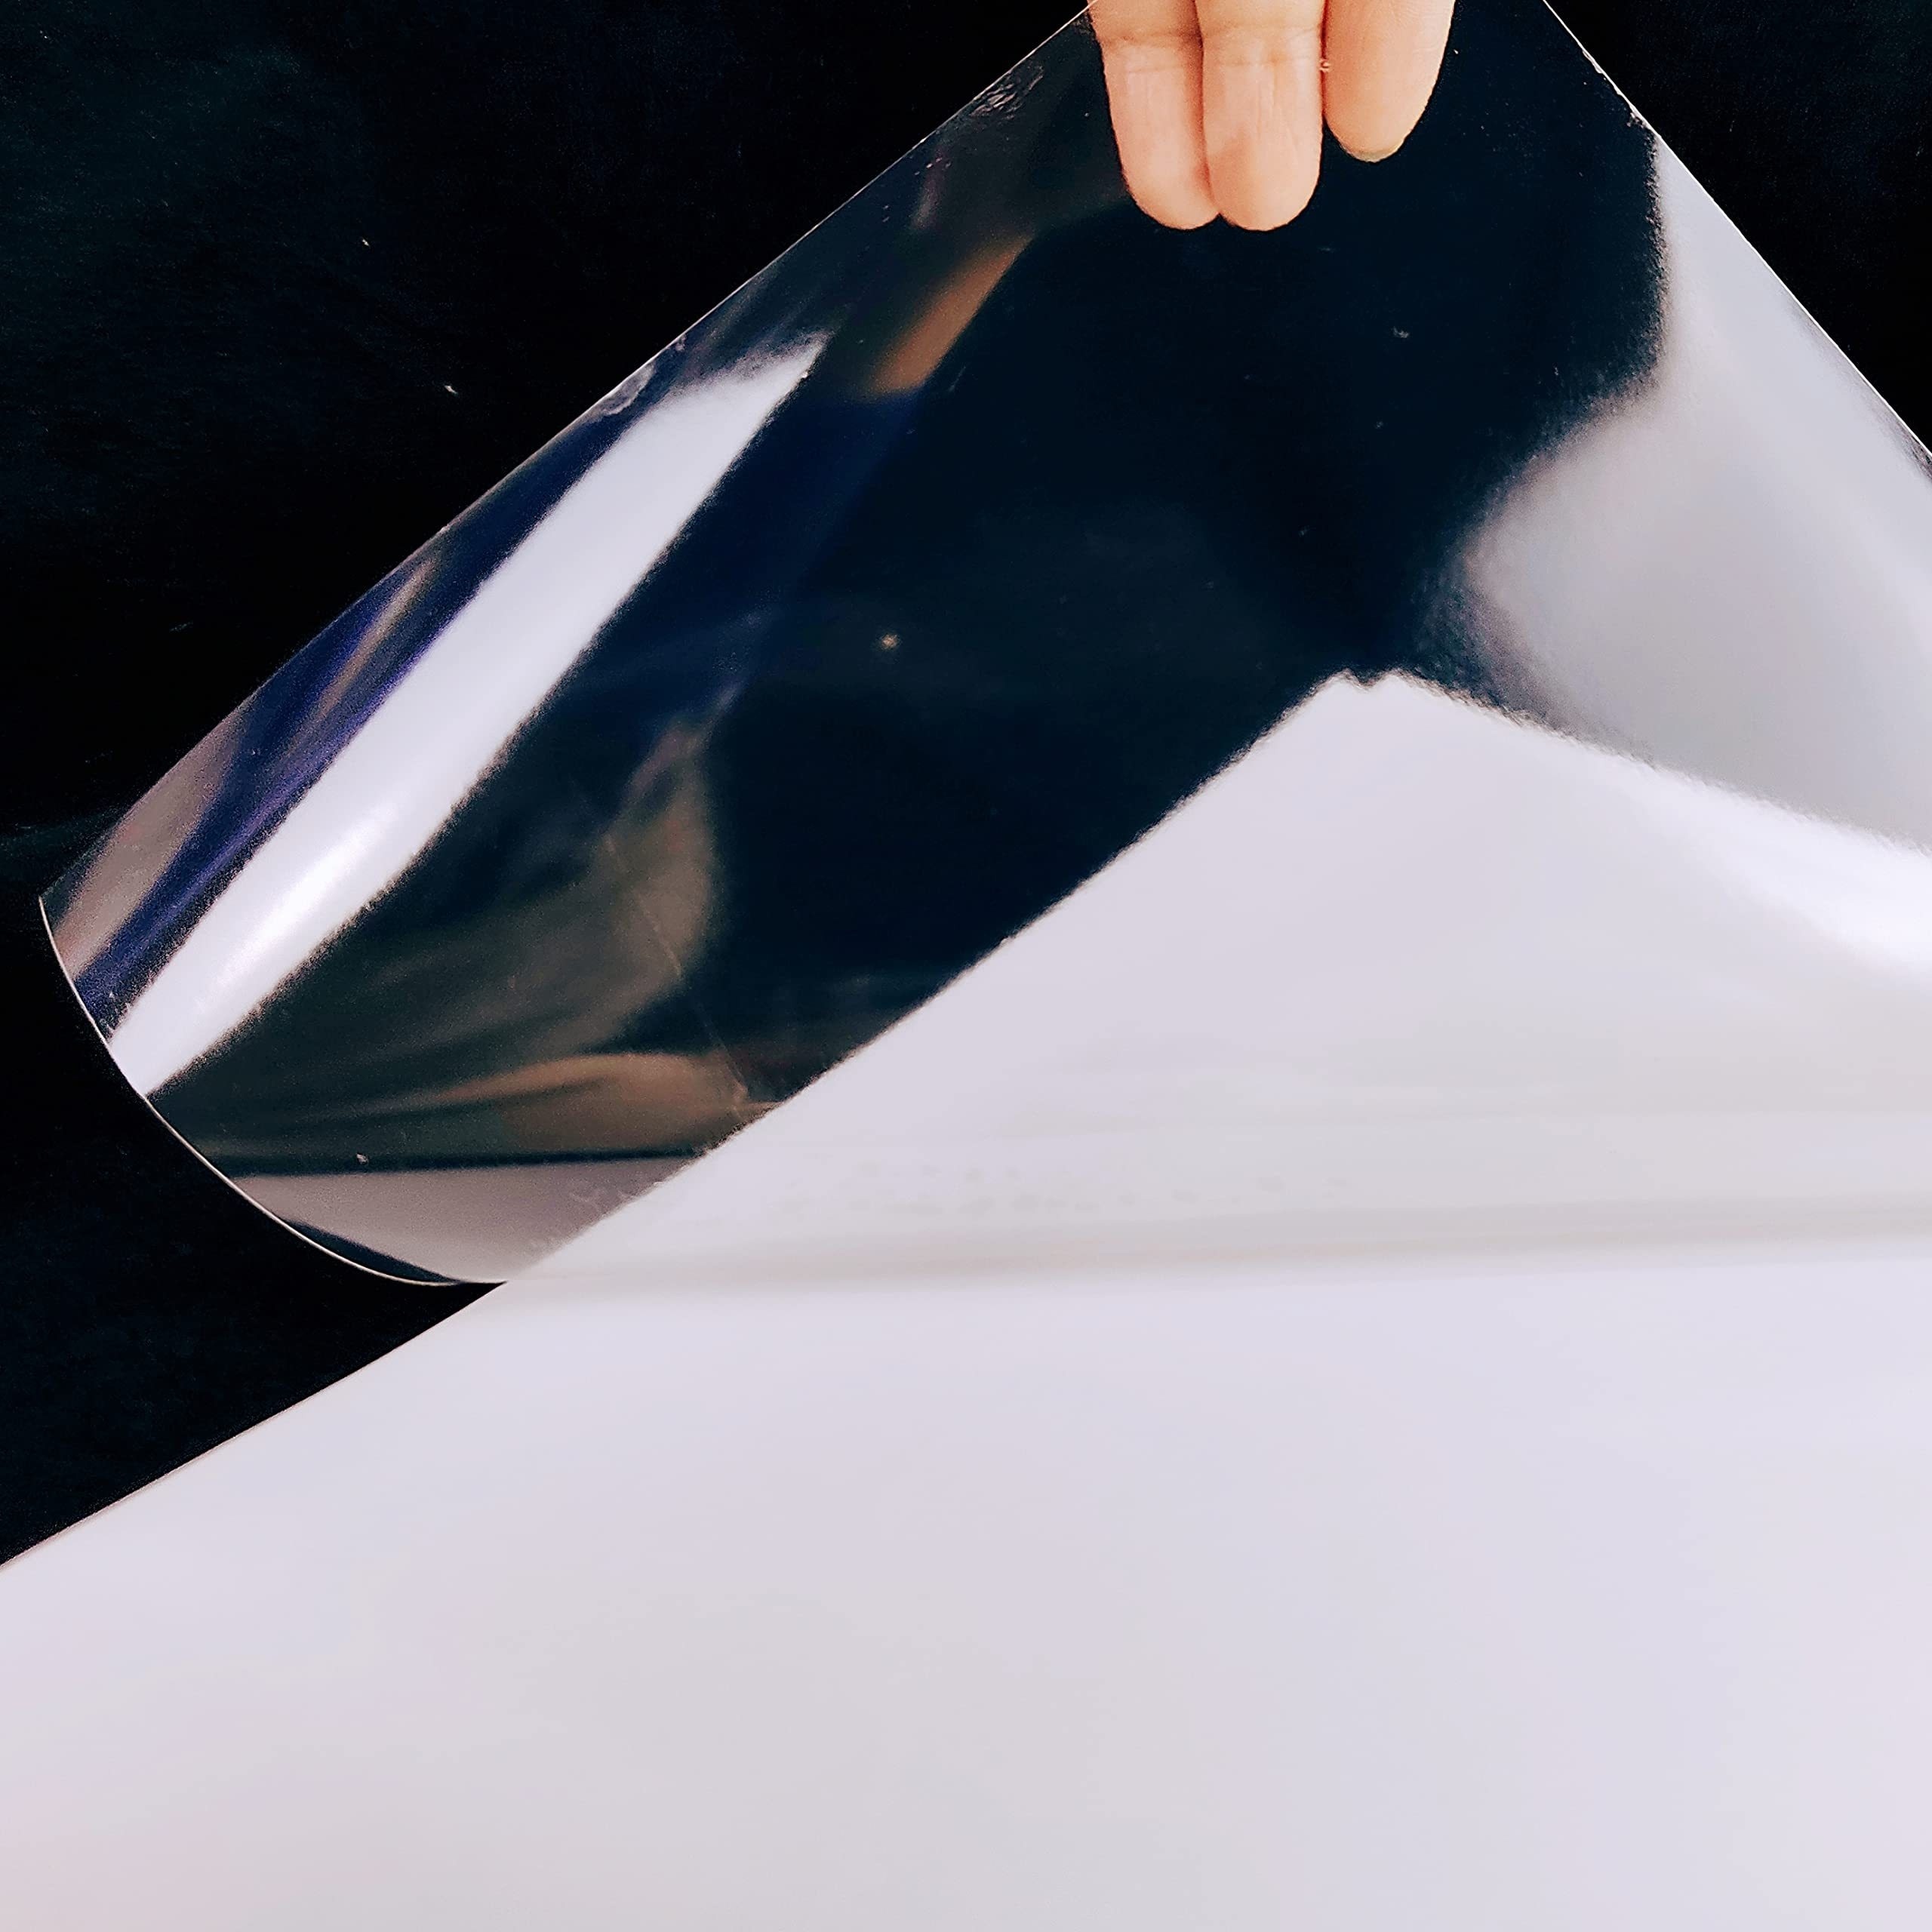 Lot de 15 feuilles de papier autocollant en vinyle de qualité supérieure  pour imprimante à jet d'encre ou laser - Blanc brillant et imperméable -  Sèche rapidement et tient parfaitement l'encre 